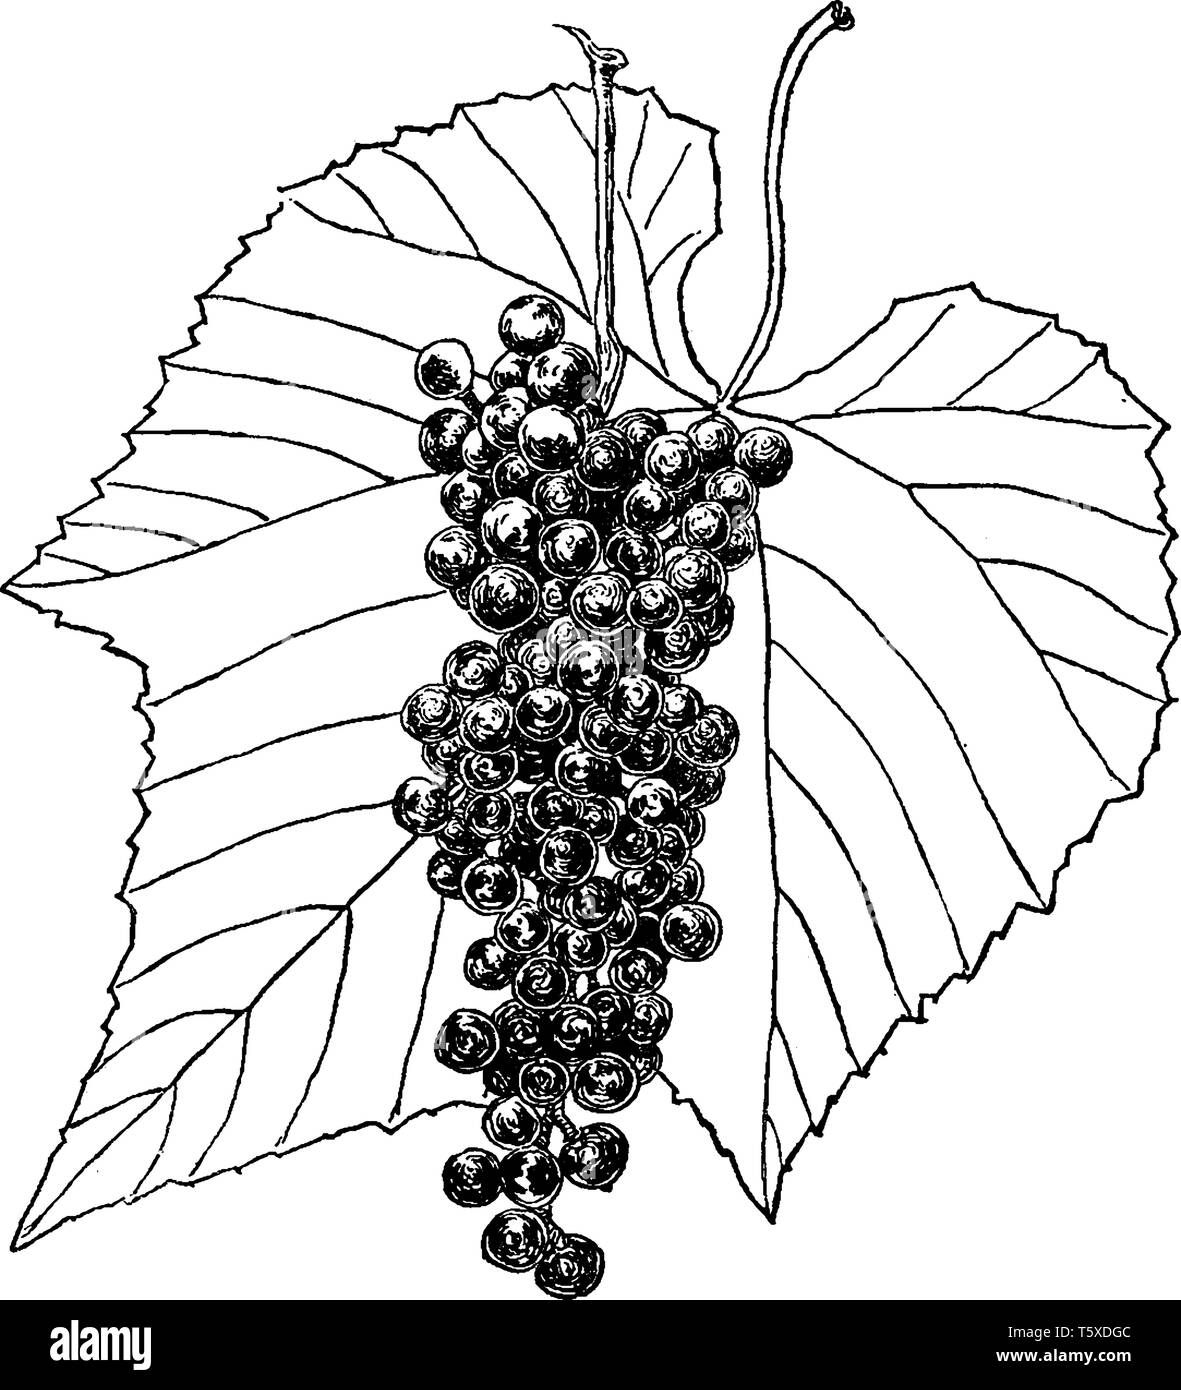 Woody Reben hat einfache oft dreilappige Blätter und seine Früchte ist ein Behäutet saftig grün oder rot bis violett-schwarze Beeren, die man getrocknet oder fres Stock Vektor